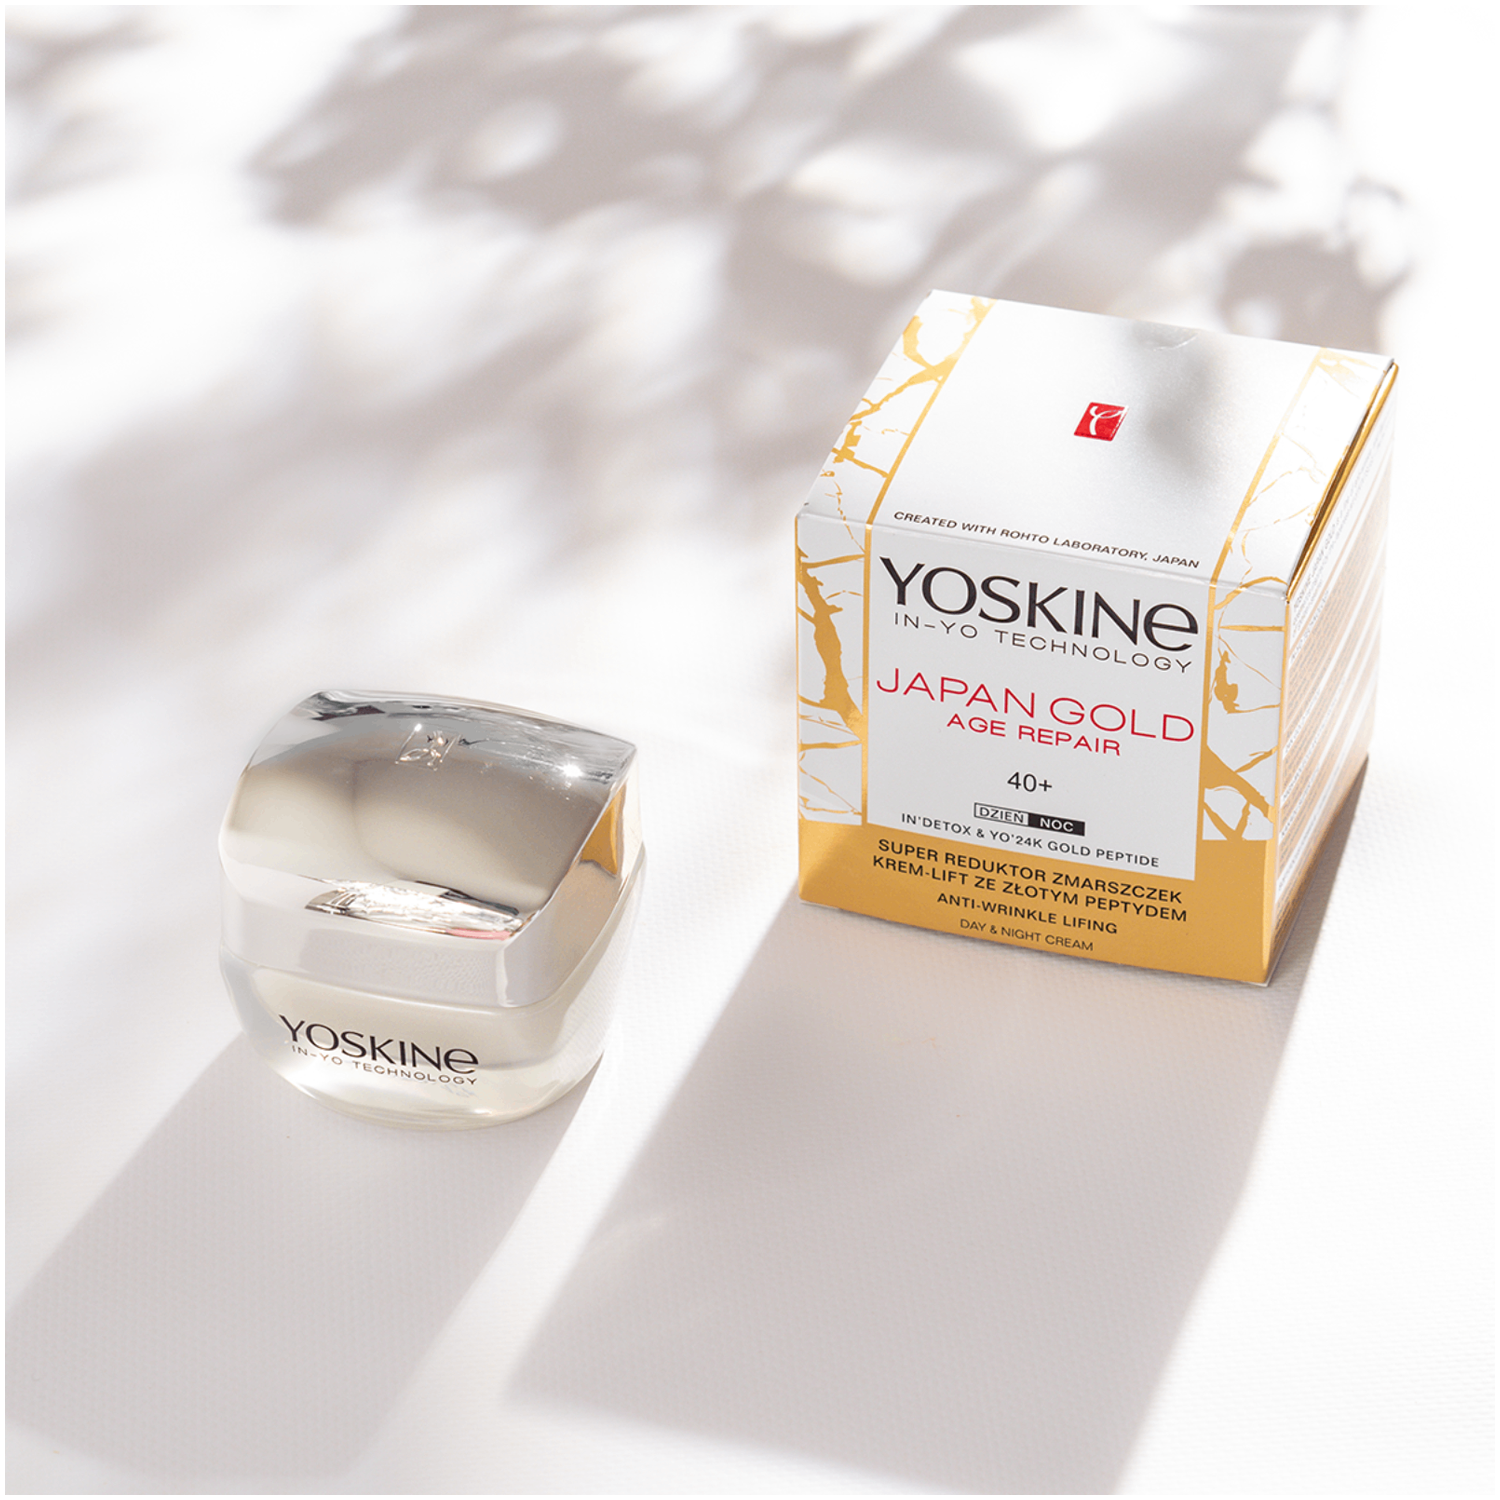 Yoskine Japan Gold дневной и ночной крем для лица 40+, 50 мл